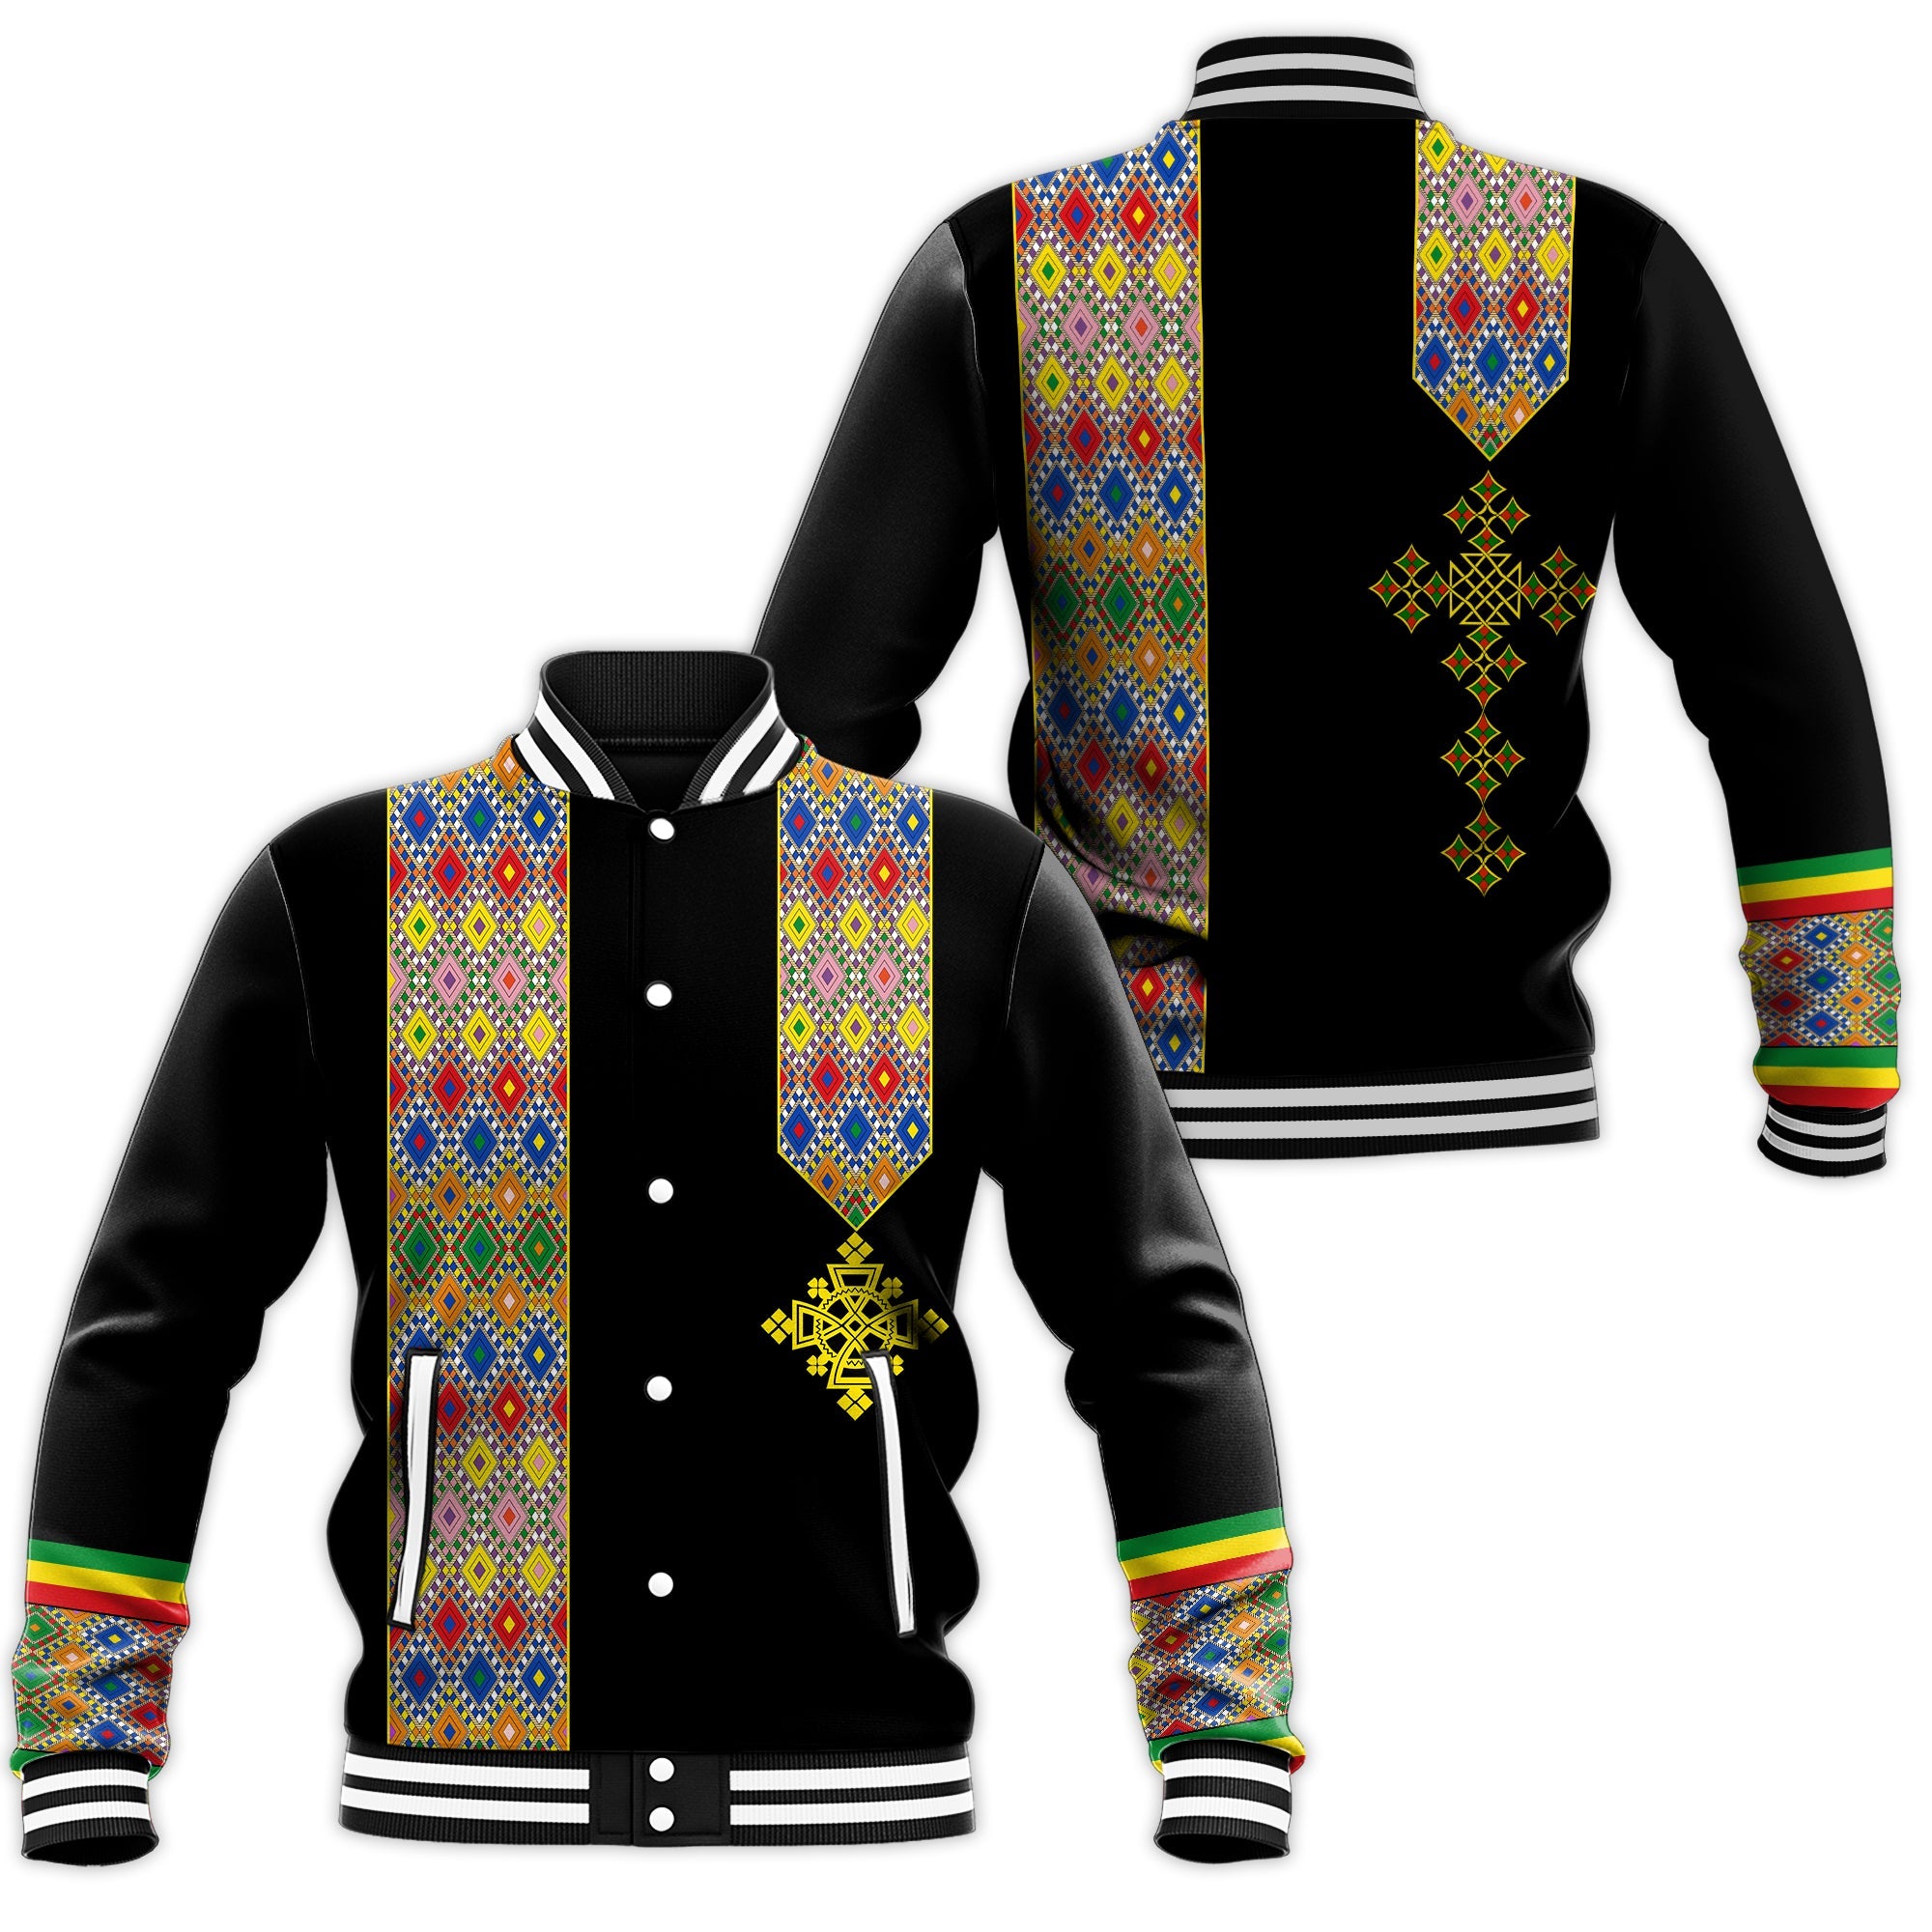 habesha-tilet-pattern-baseball-jacket-ethiopia-emblem